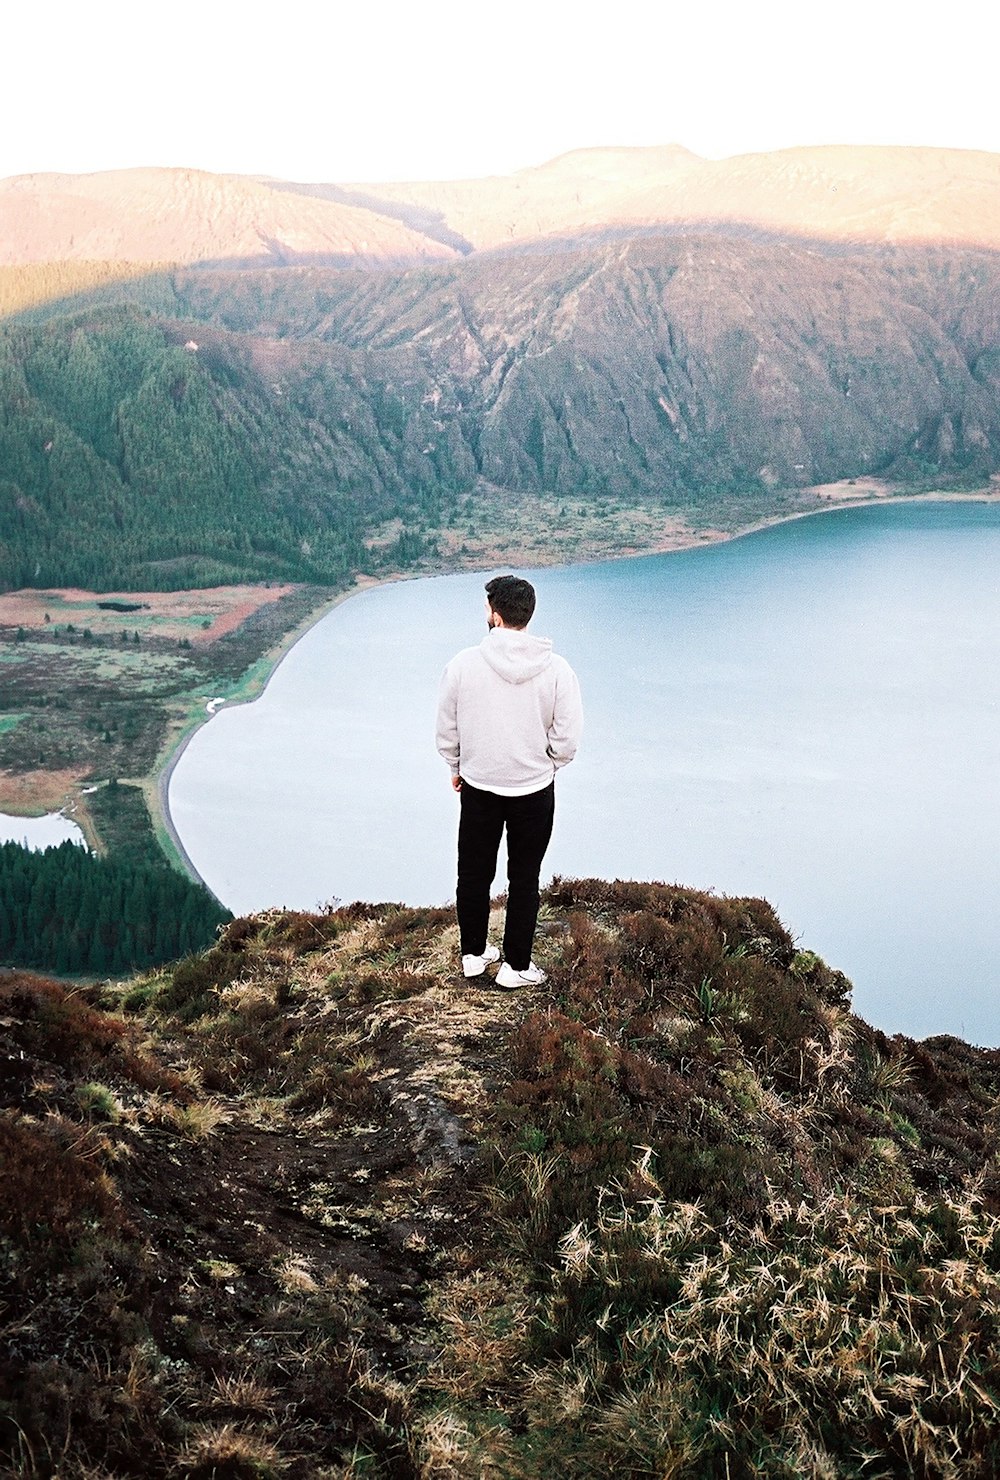 un uomo in piedi sulla cima di una collina che domina un lago